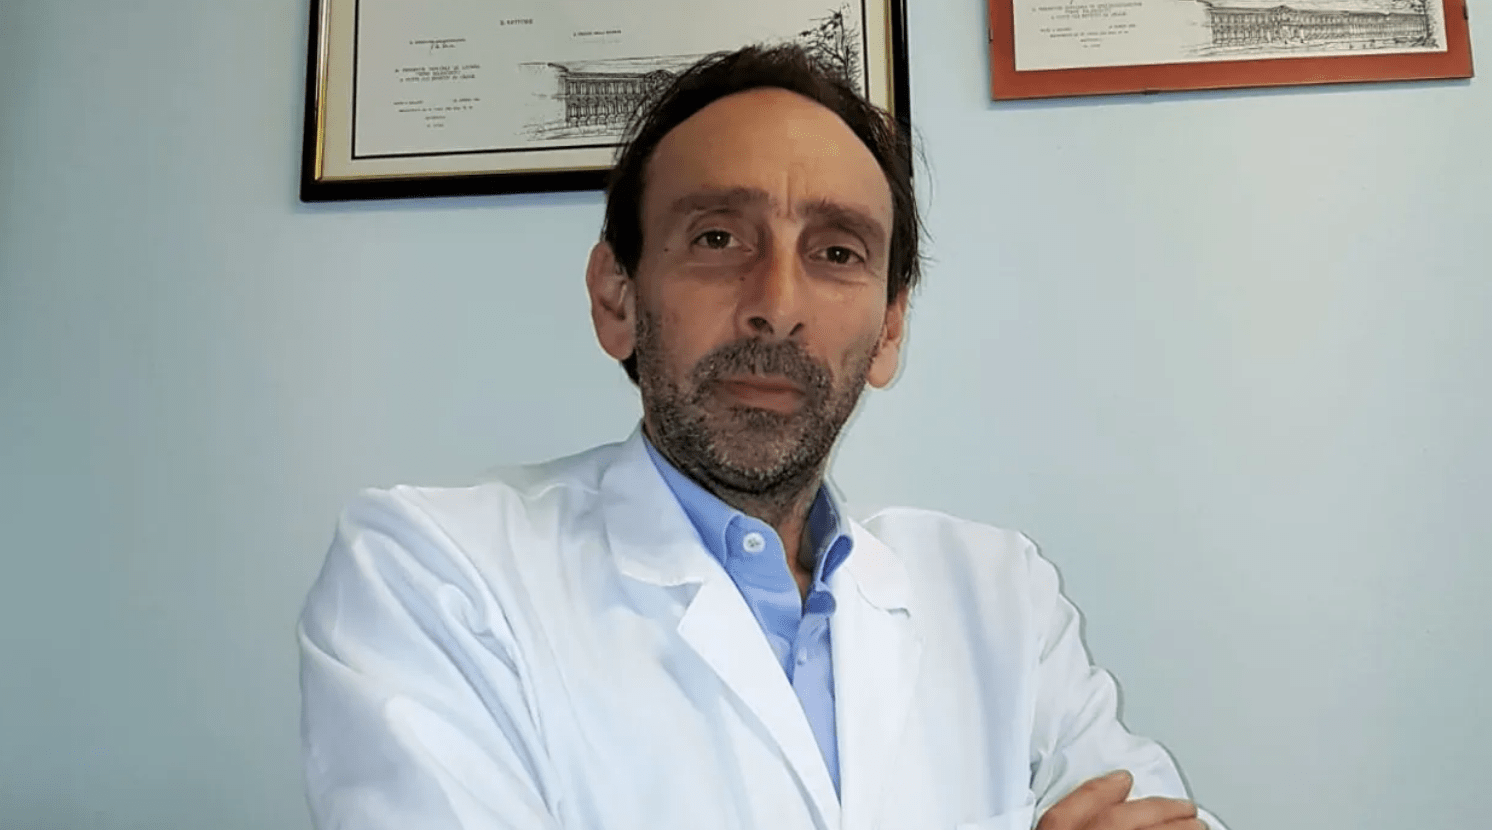 Covid: el paso en falso inquietante de Lancet sobre la cloroquina